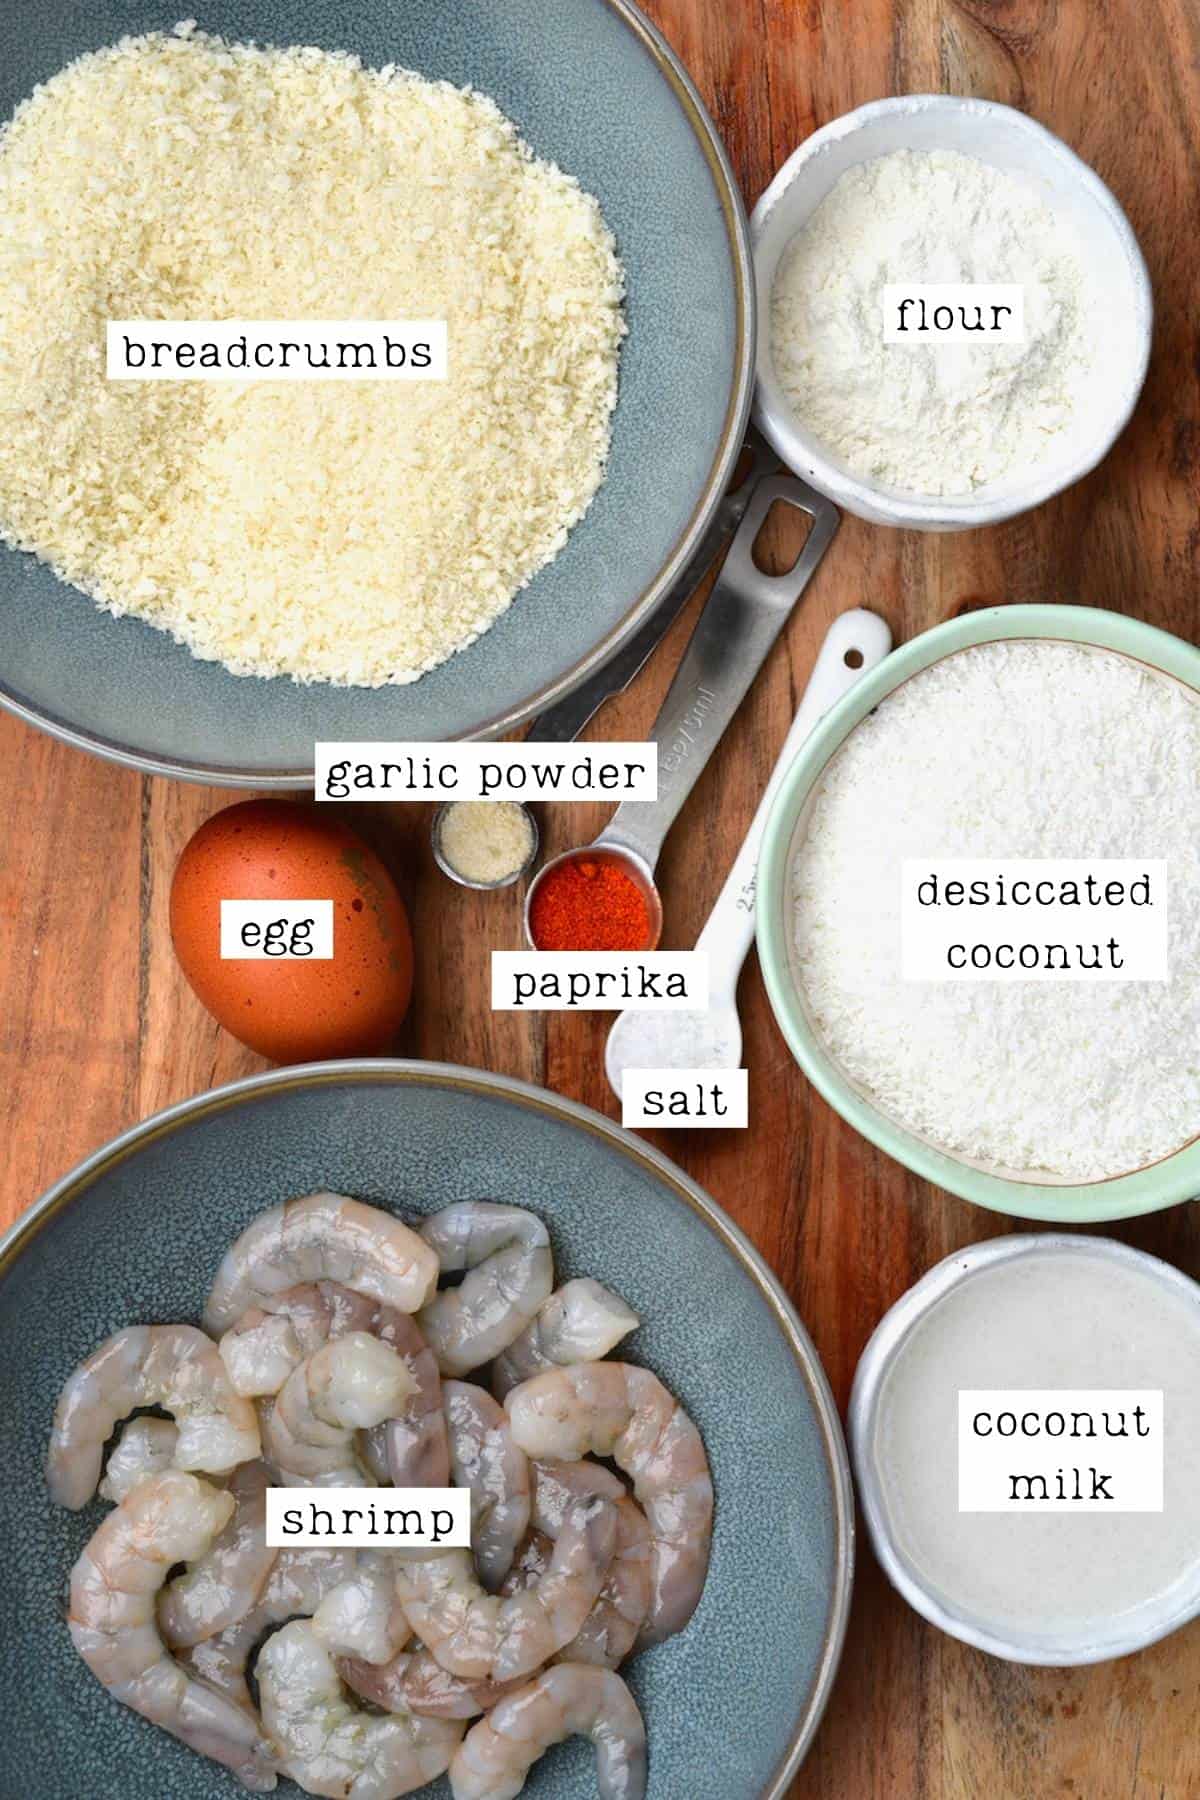 Ingredients for crispy baked shrimp